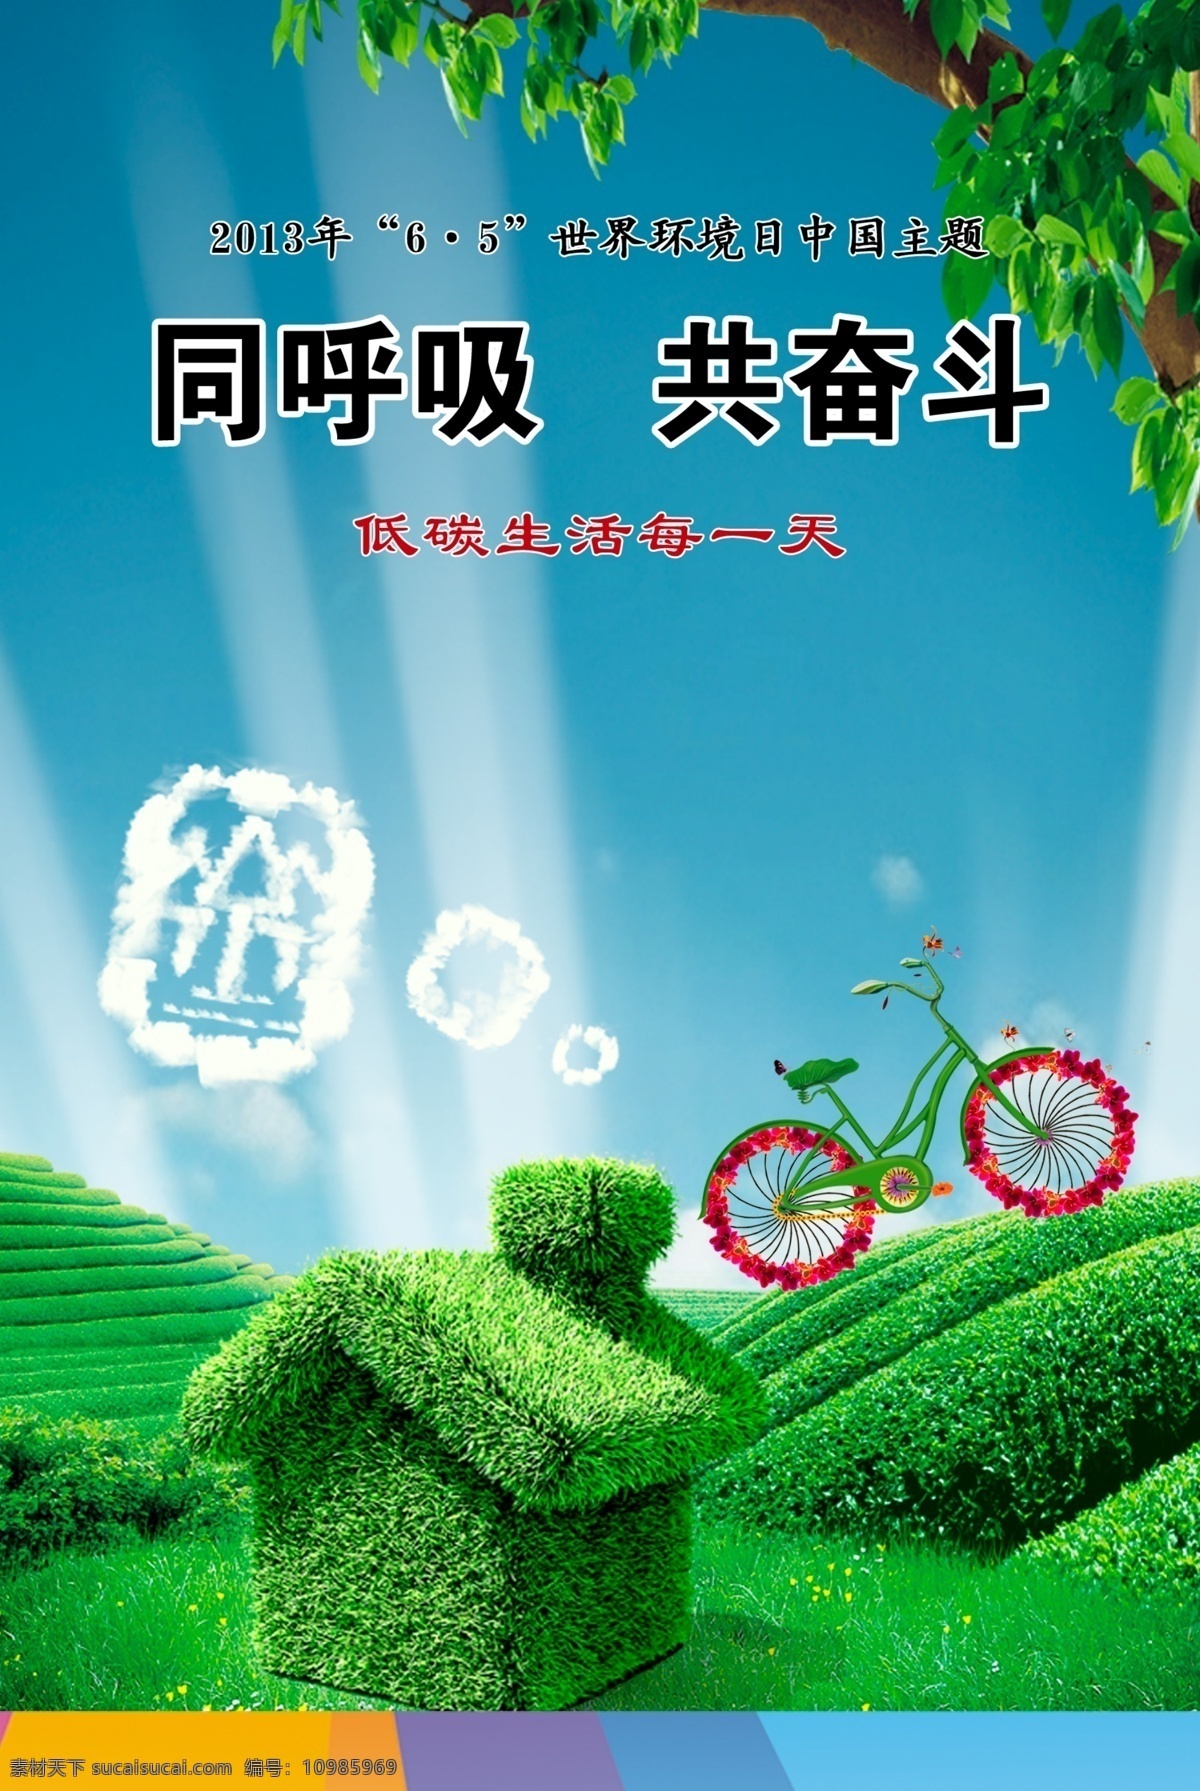 世界环境日 ps 海报 绿色 招贴 招贴设计